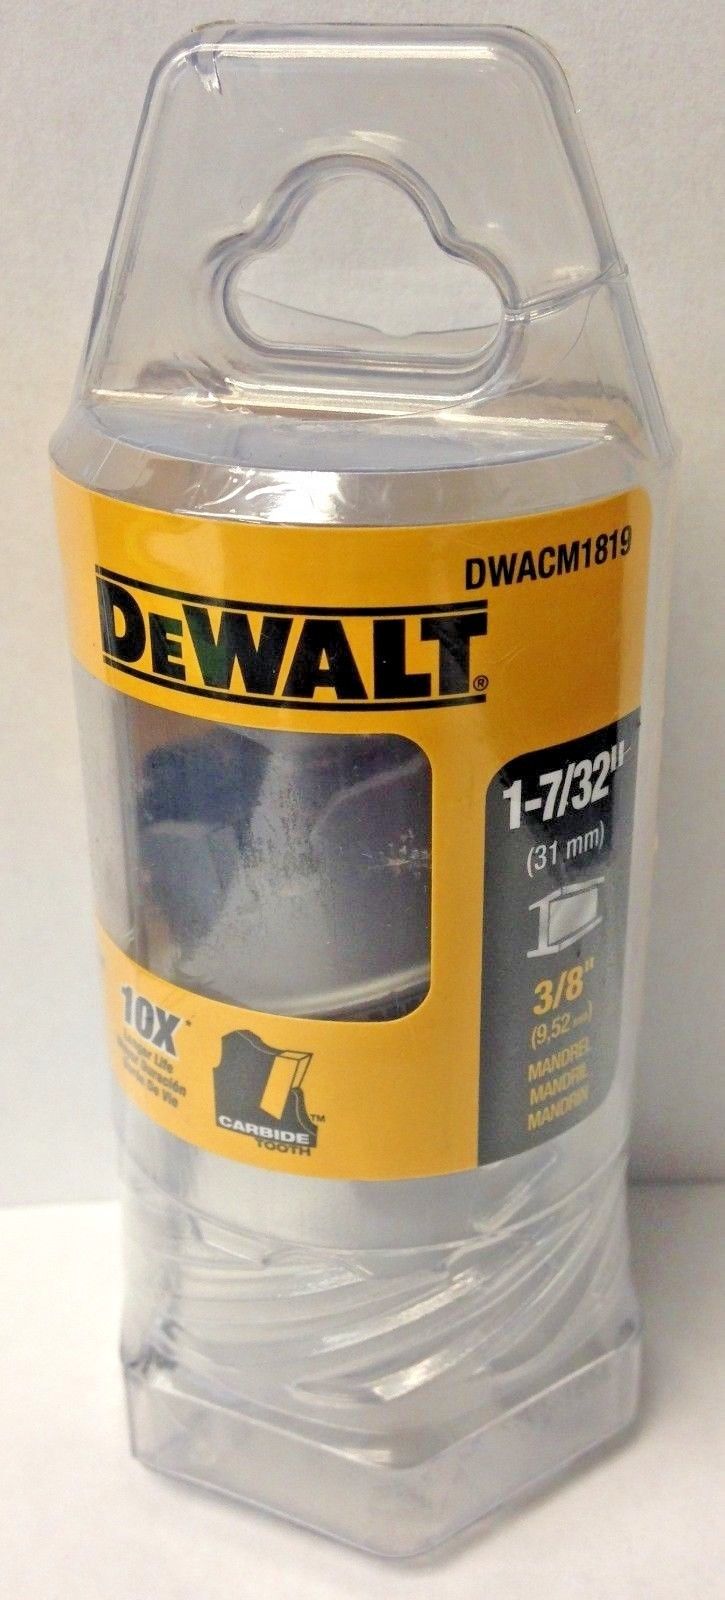 Dewalt DWACM1819 1‑7/32" Metal Cutting Carbide Hole saw